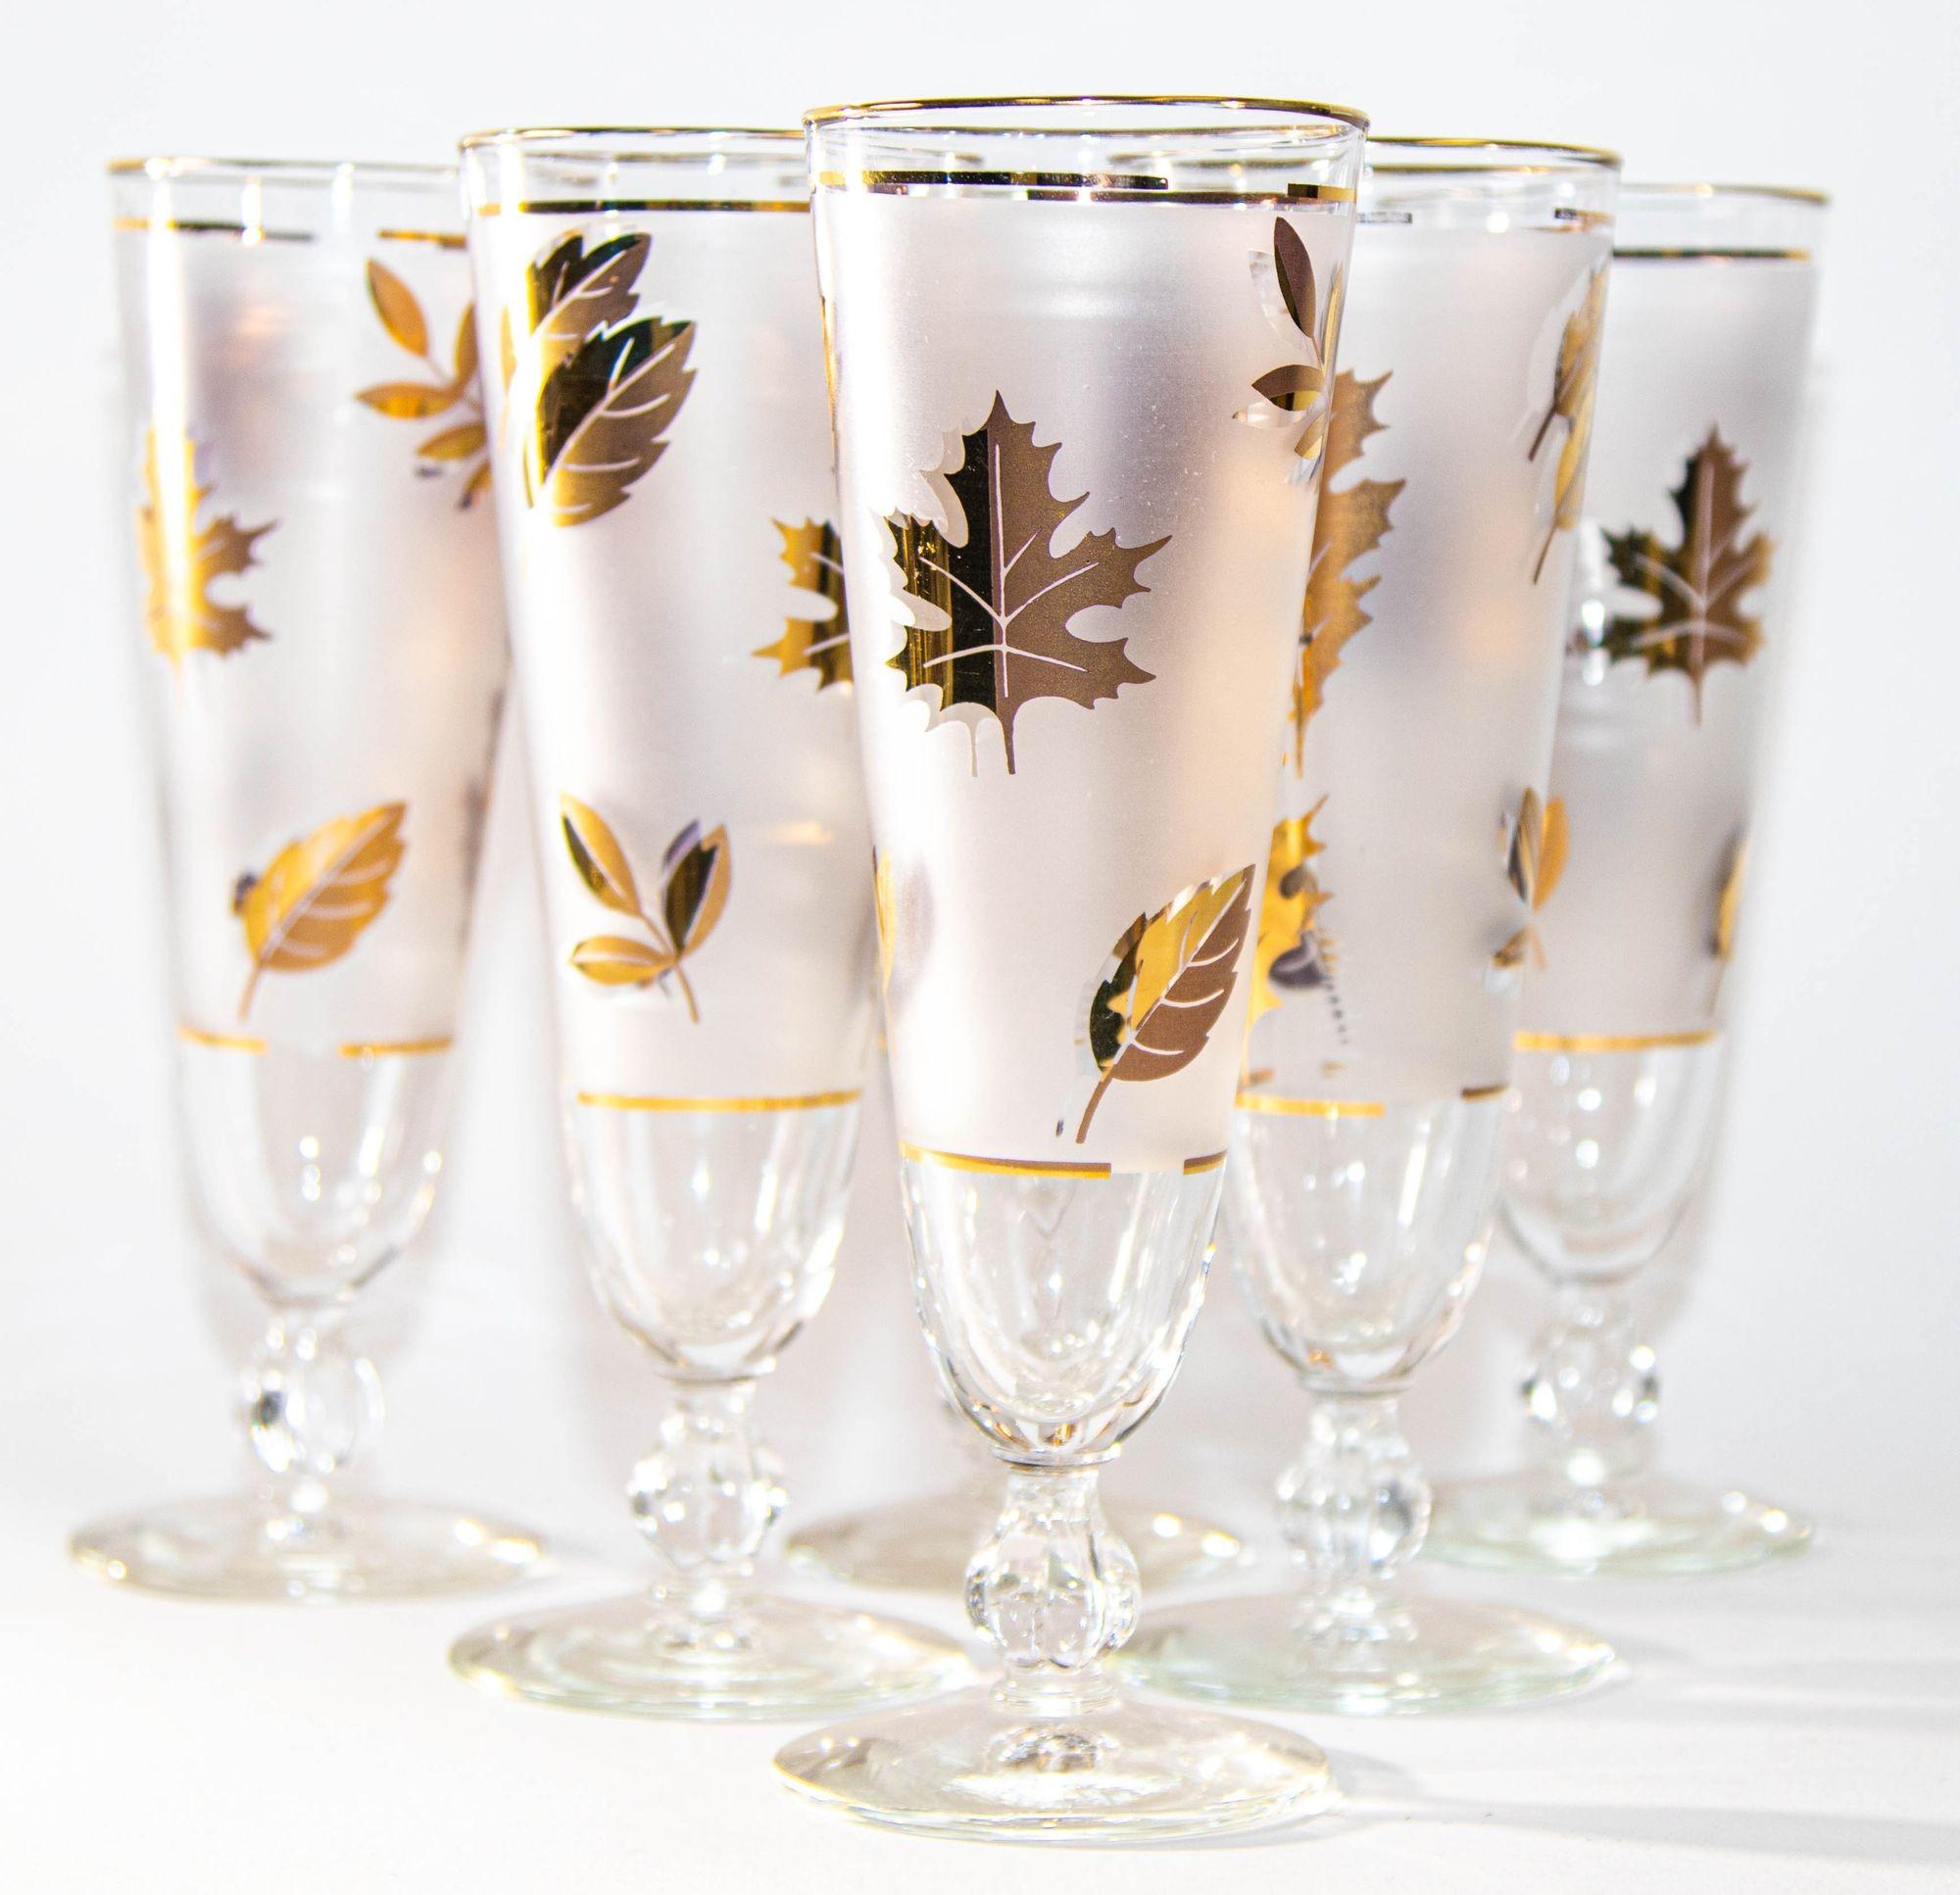 Libbey Glass Company Golden Foliage Pilsner Glass set of 6 Frosted with Gold Leaf.
Ensemble de verres à pilsner vintage de Libbey dans leur motif Golden Foliage.
Collection Golden Foliage de Libbey Fabriqué en Amérique.
Il s'agit de verres à pied